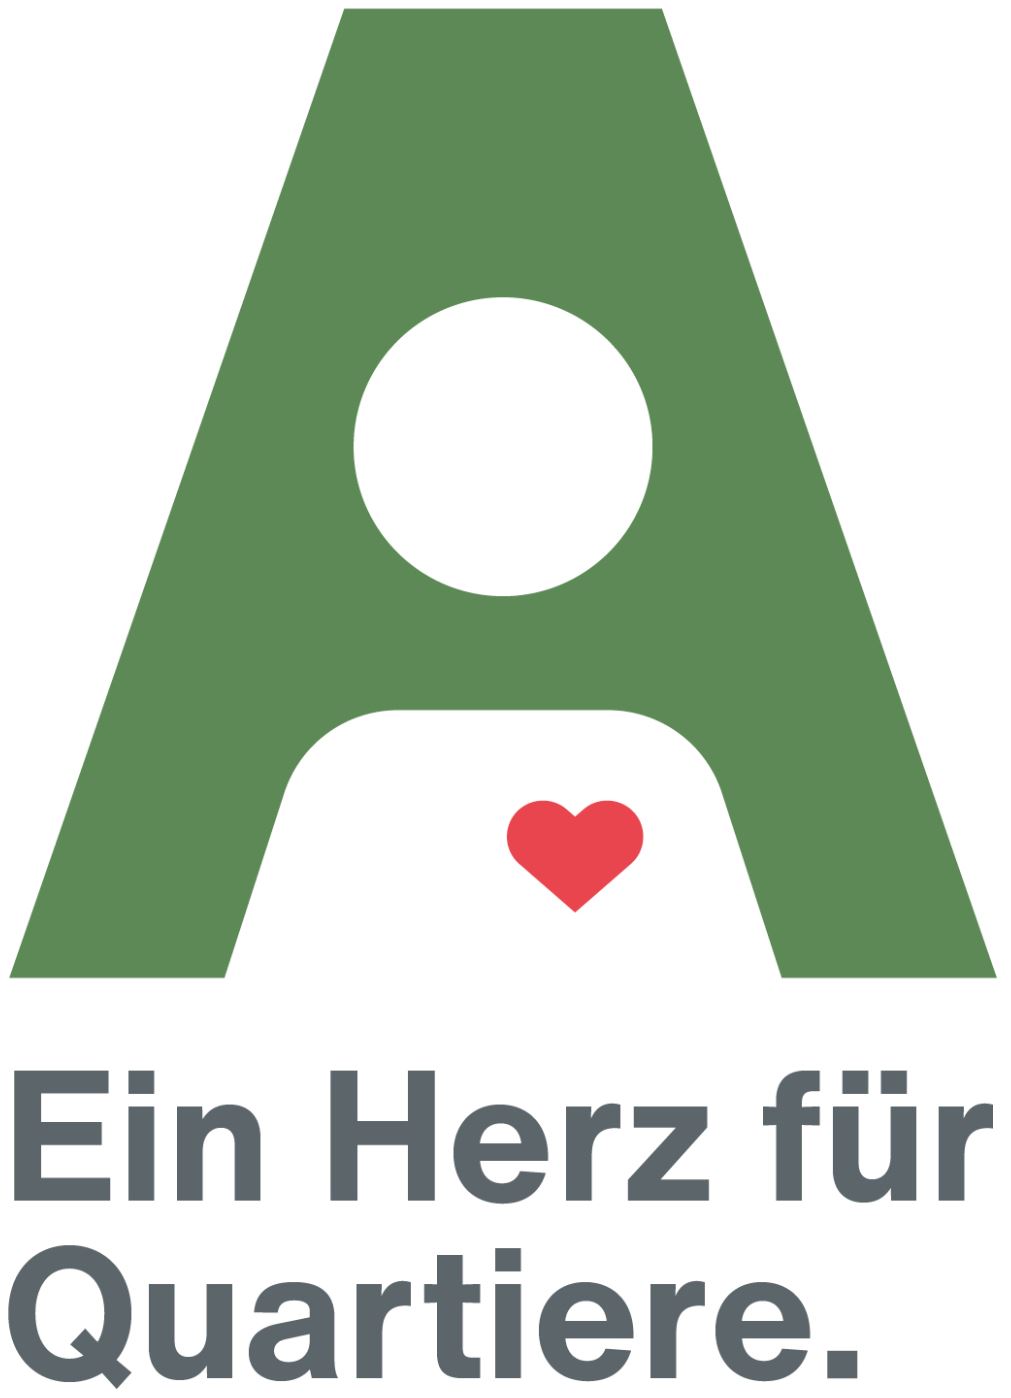 Ein grünes A, darunter ein rotes Herz und darunter steht ein Herz für Quartiere